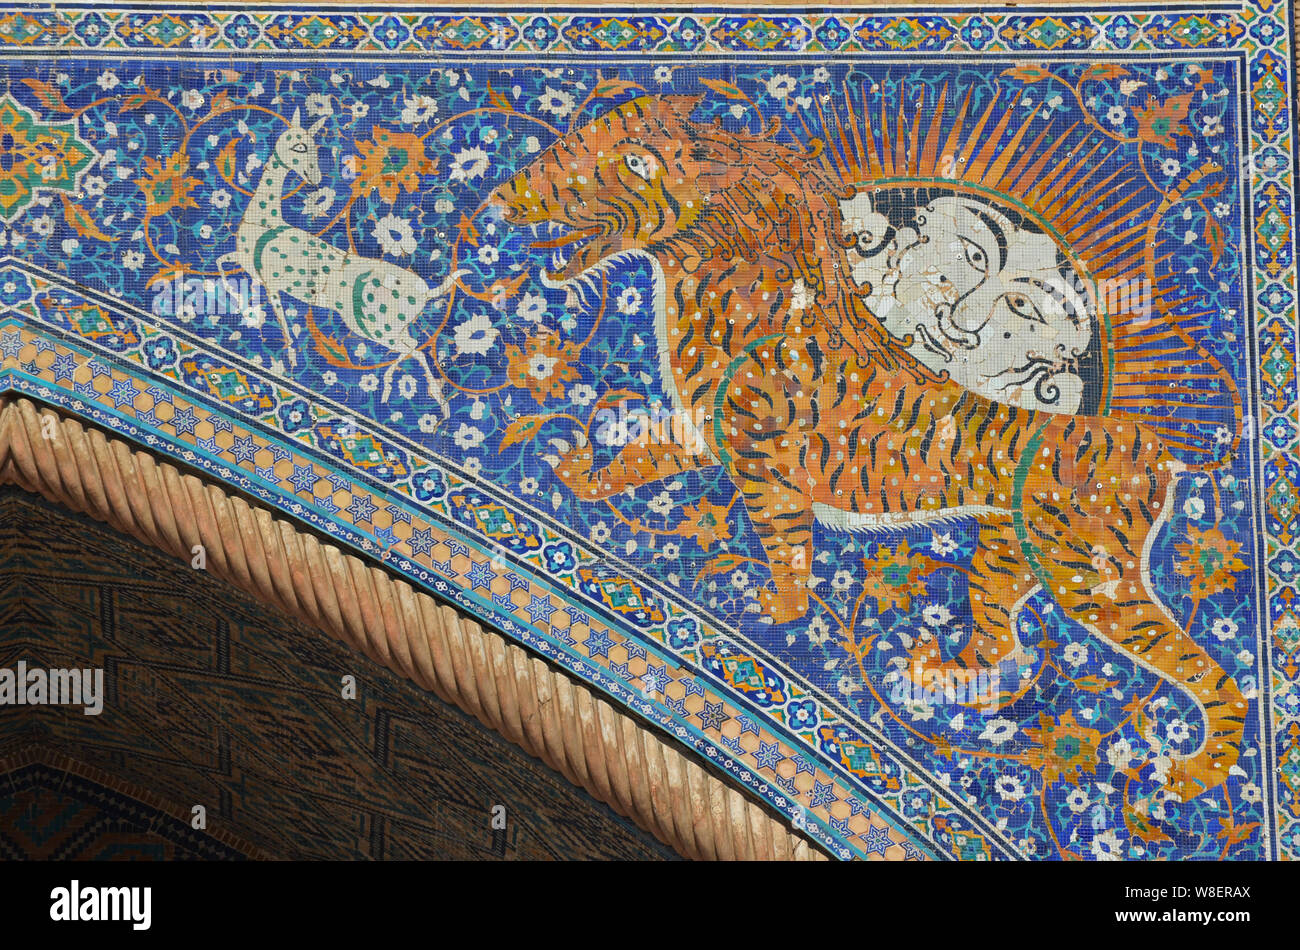 Mosaïques de tigre et de soleil à face humaine dans le pishtaq de Sher-Dor Madrasah, Registan, Samarcande, Ouzbékistan Banque D'Images